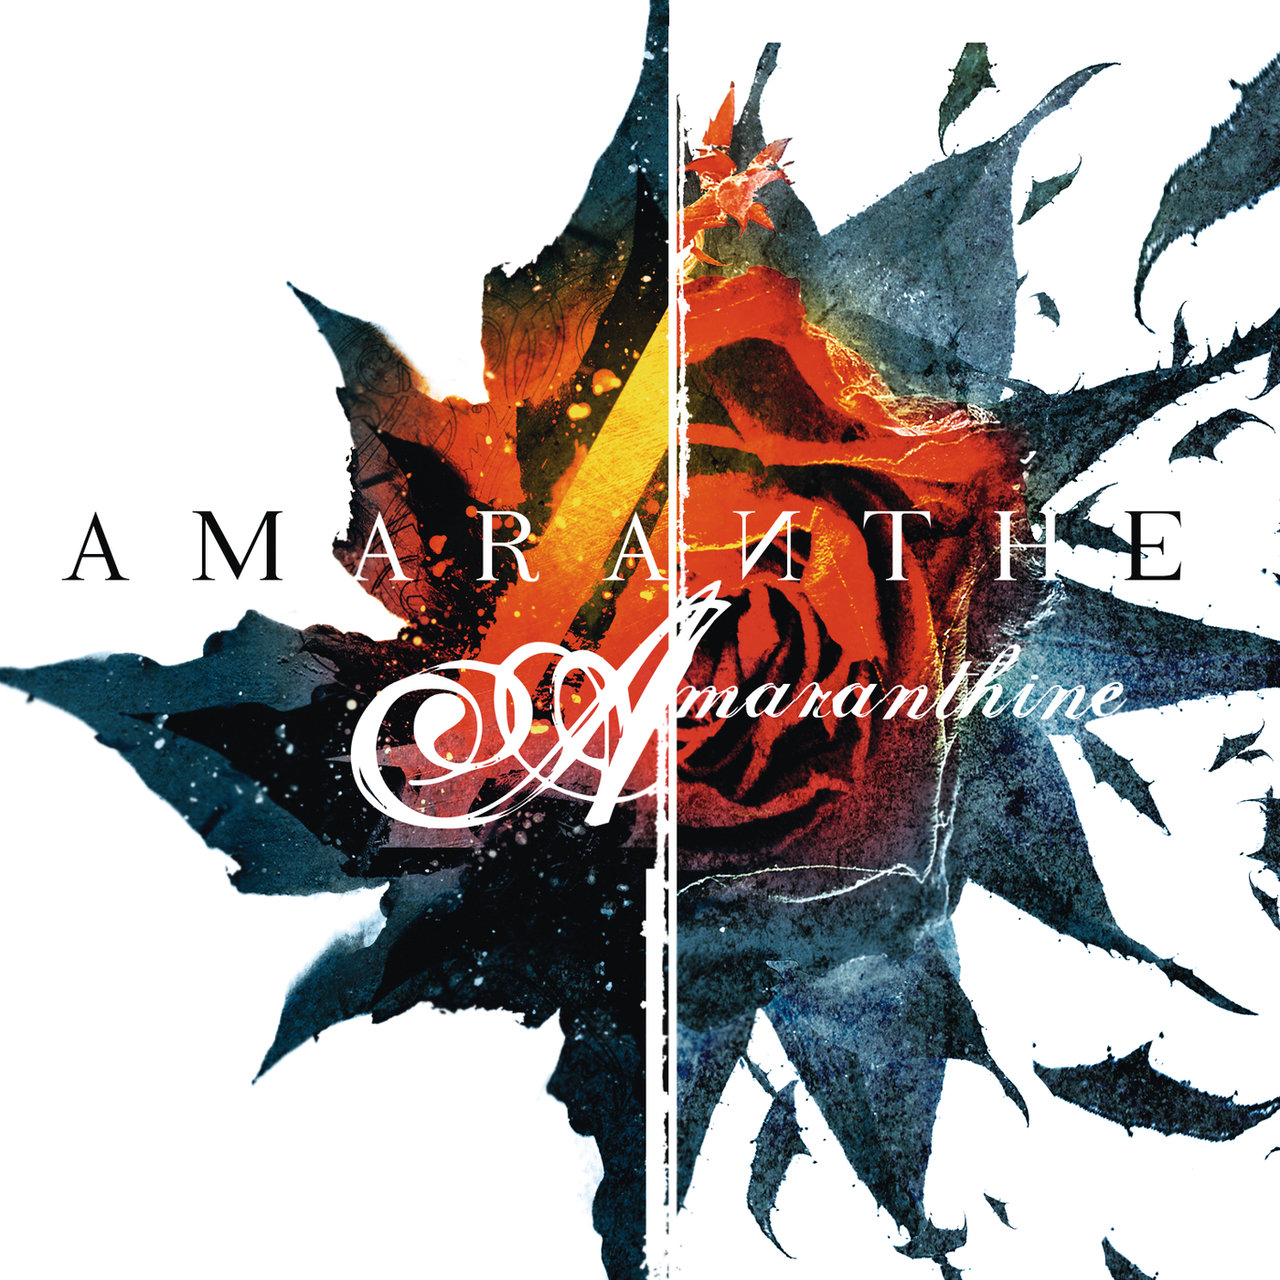 Amaranthe Amaranthine cover artwork